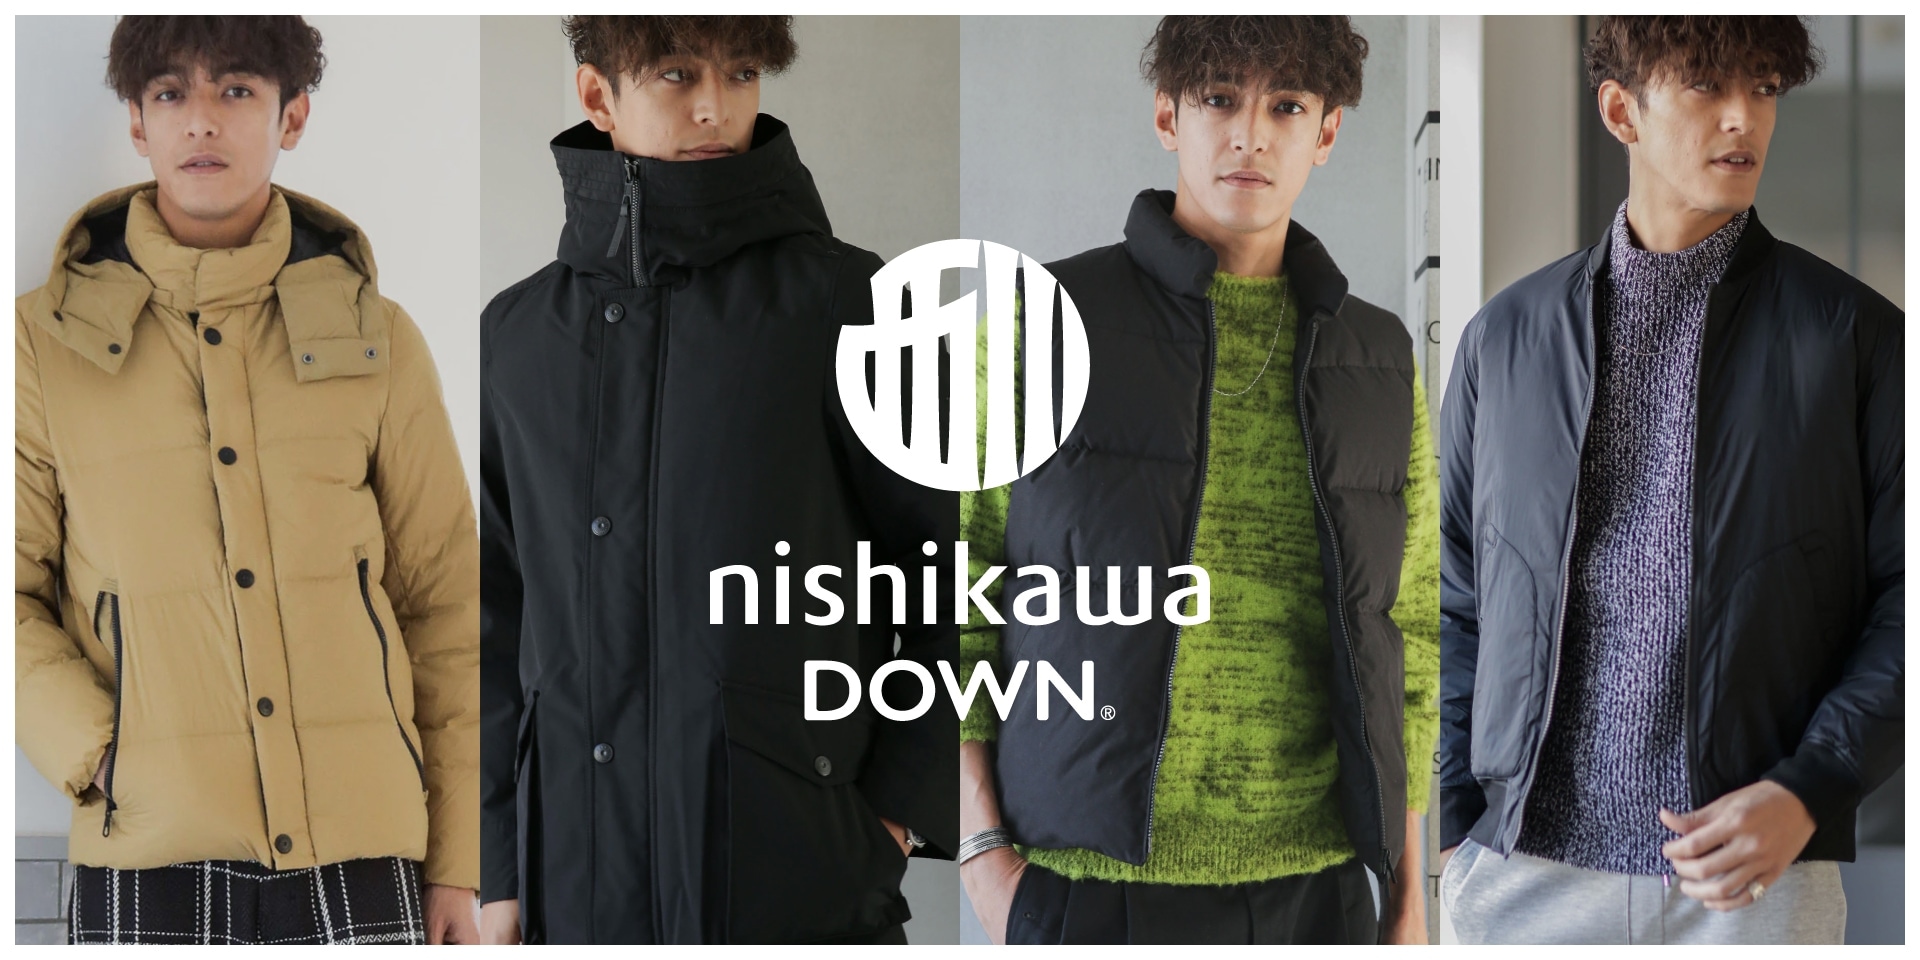 暖かく快適に、寒い冬を乗り切る「nishikawa DOWN®」